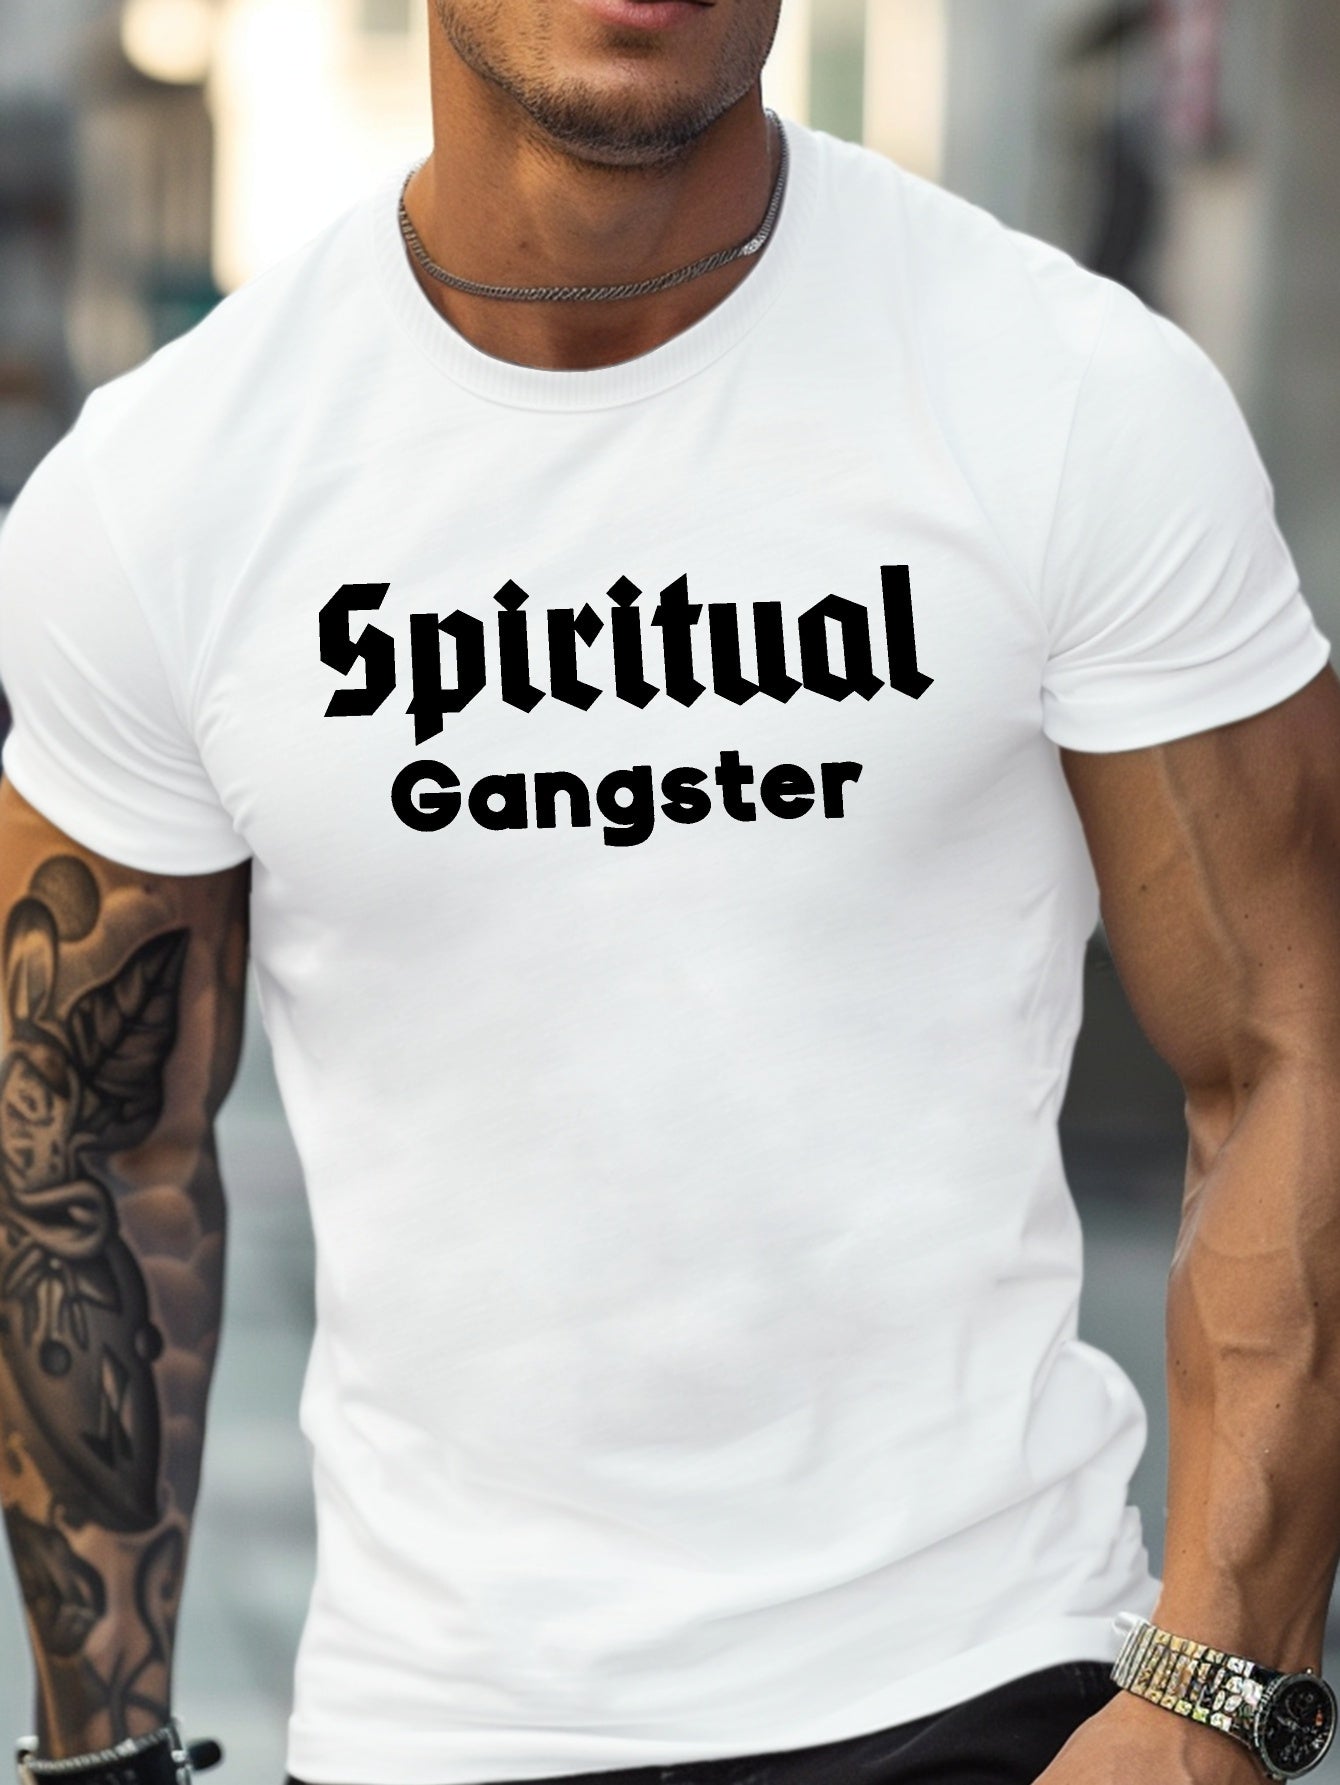 Spiritual Gangster Funny Men's Christian T-shirt claimedbygoddesigns